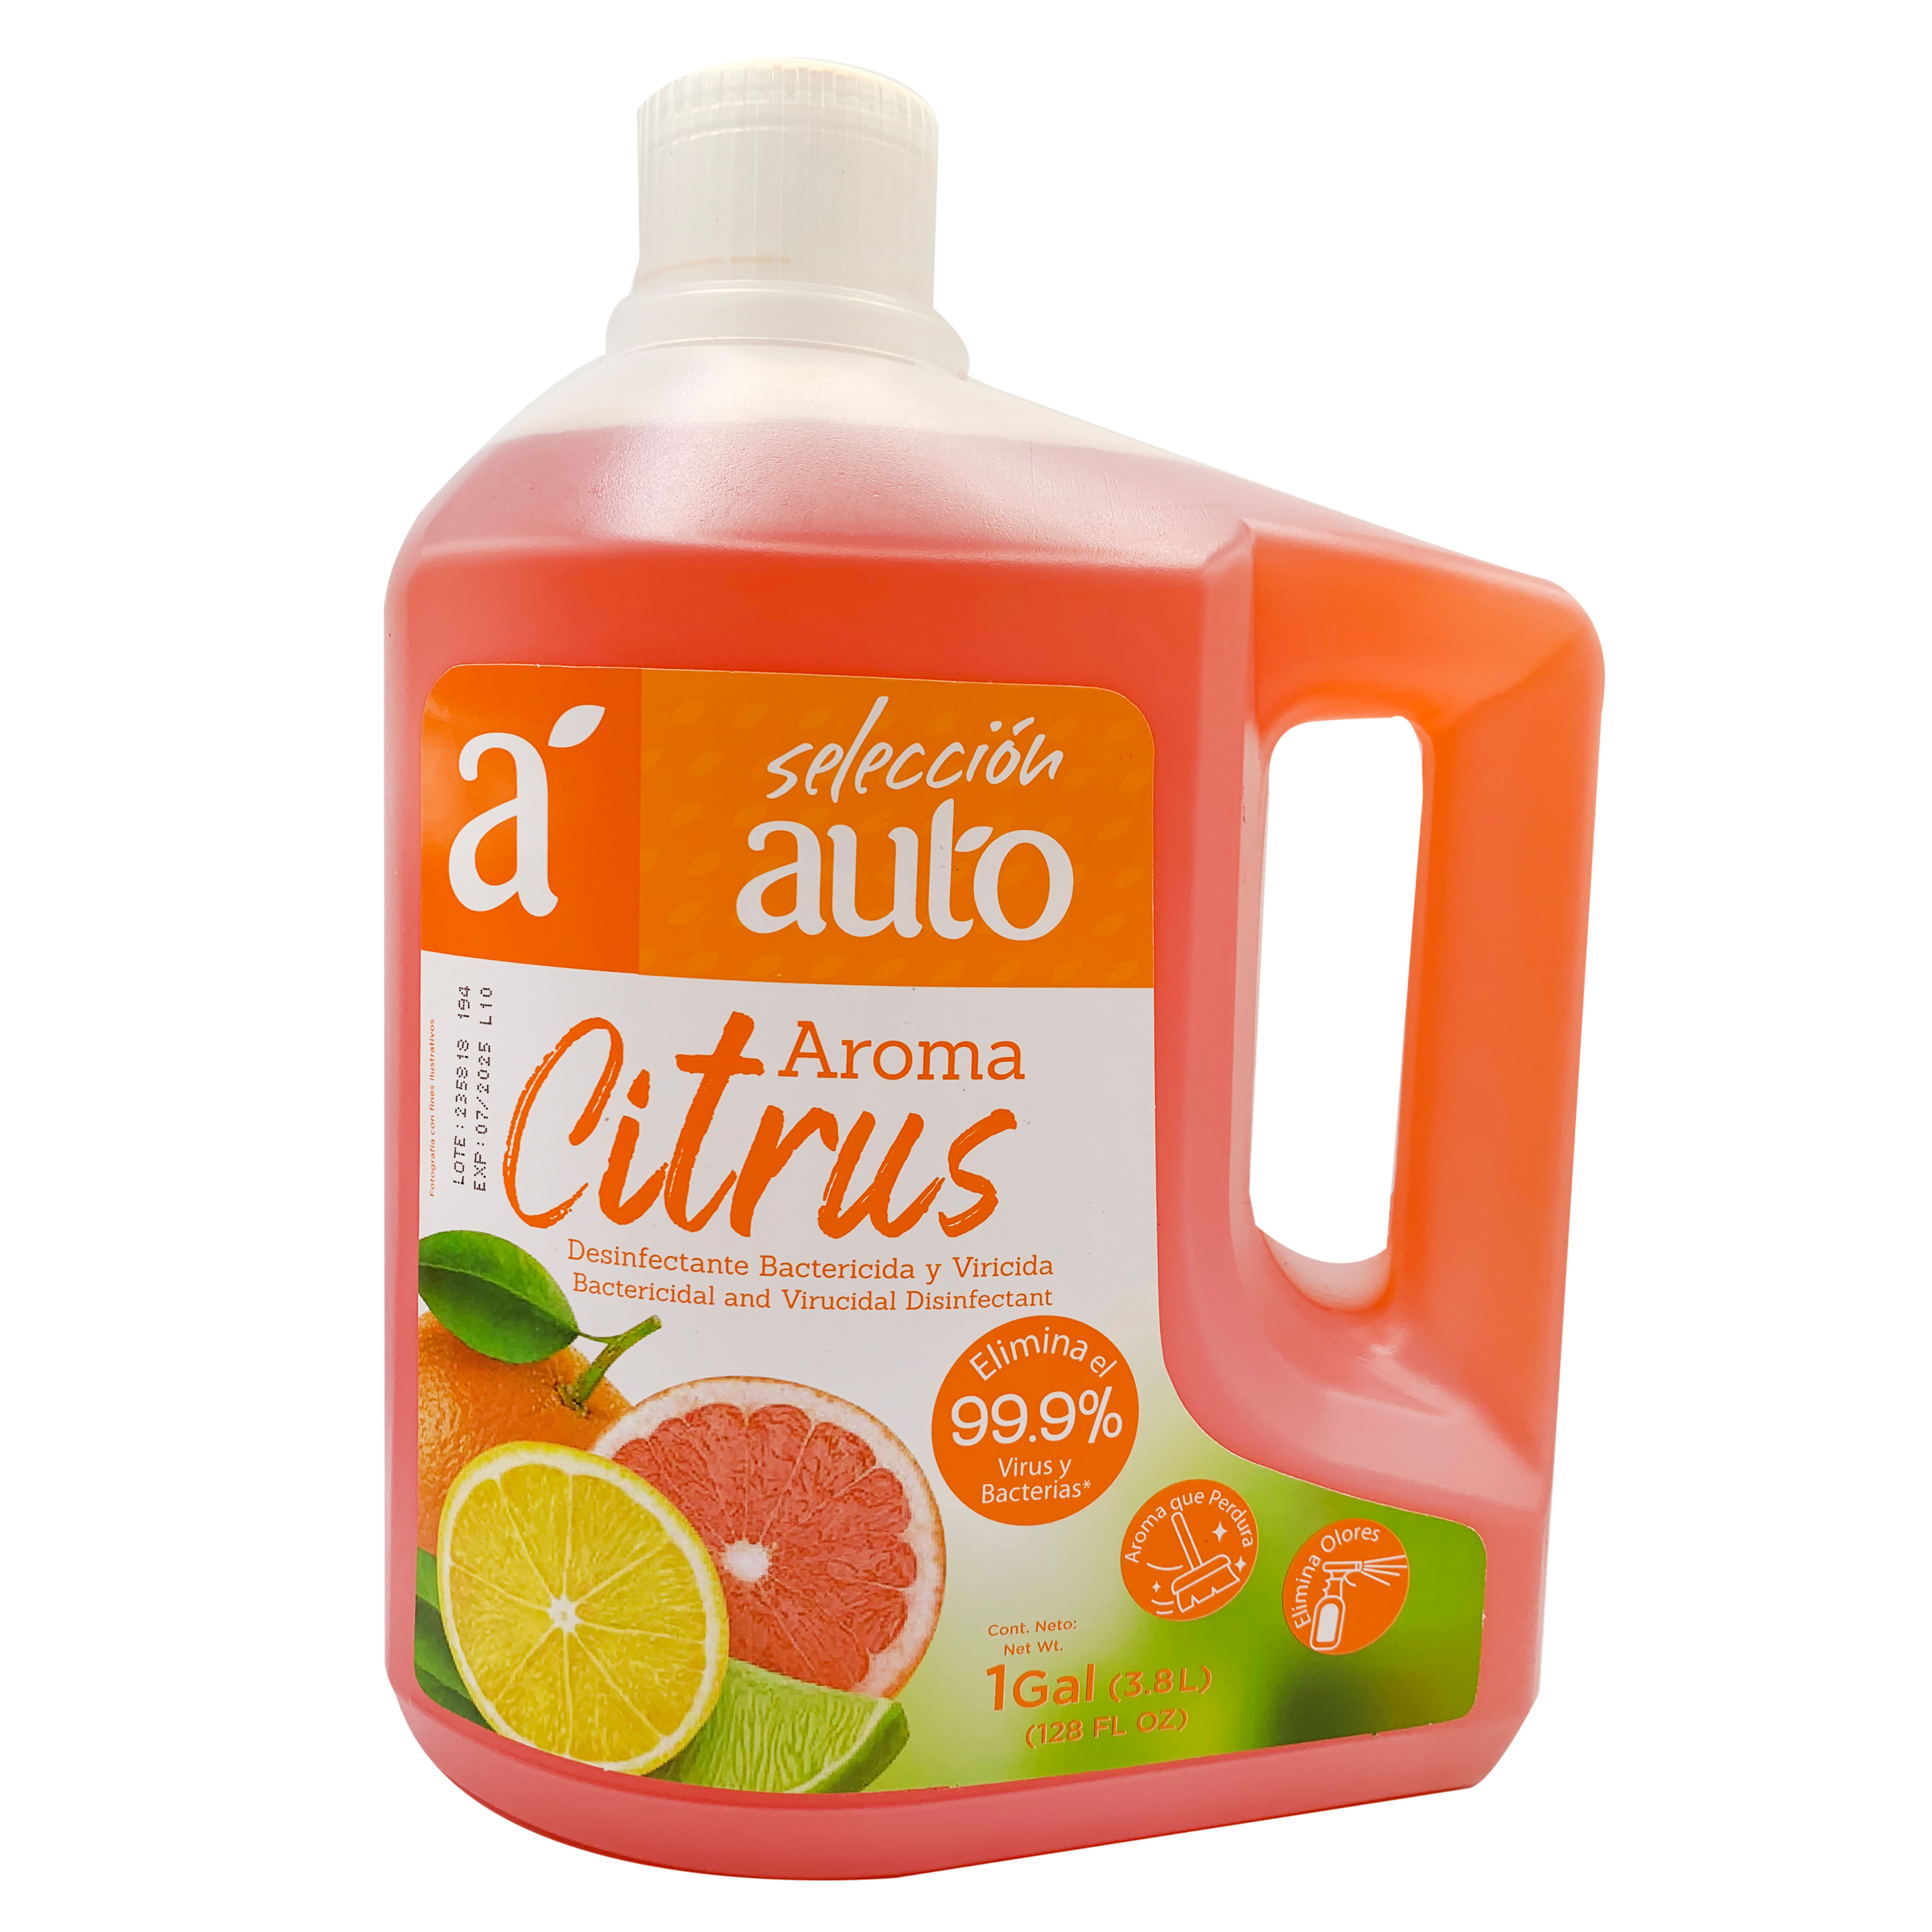 Desinfectante Liquido Citrus Selección Auto Envase 3785 Ml